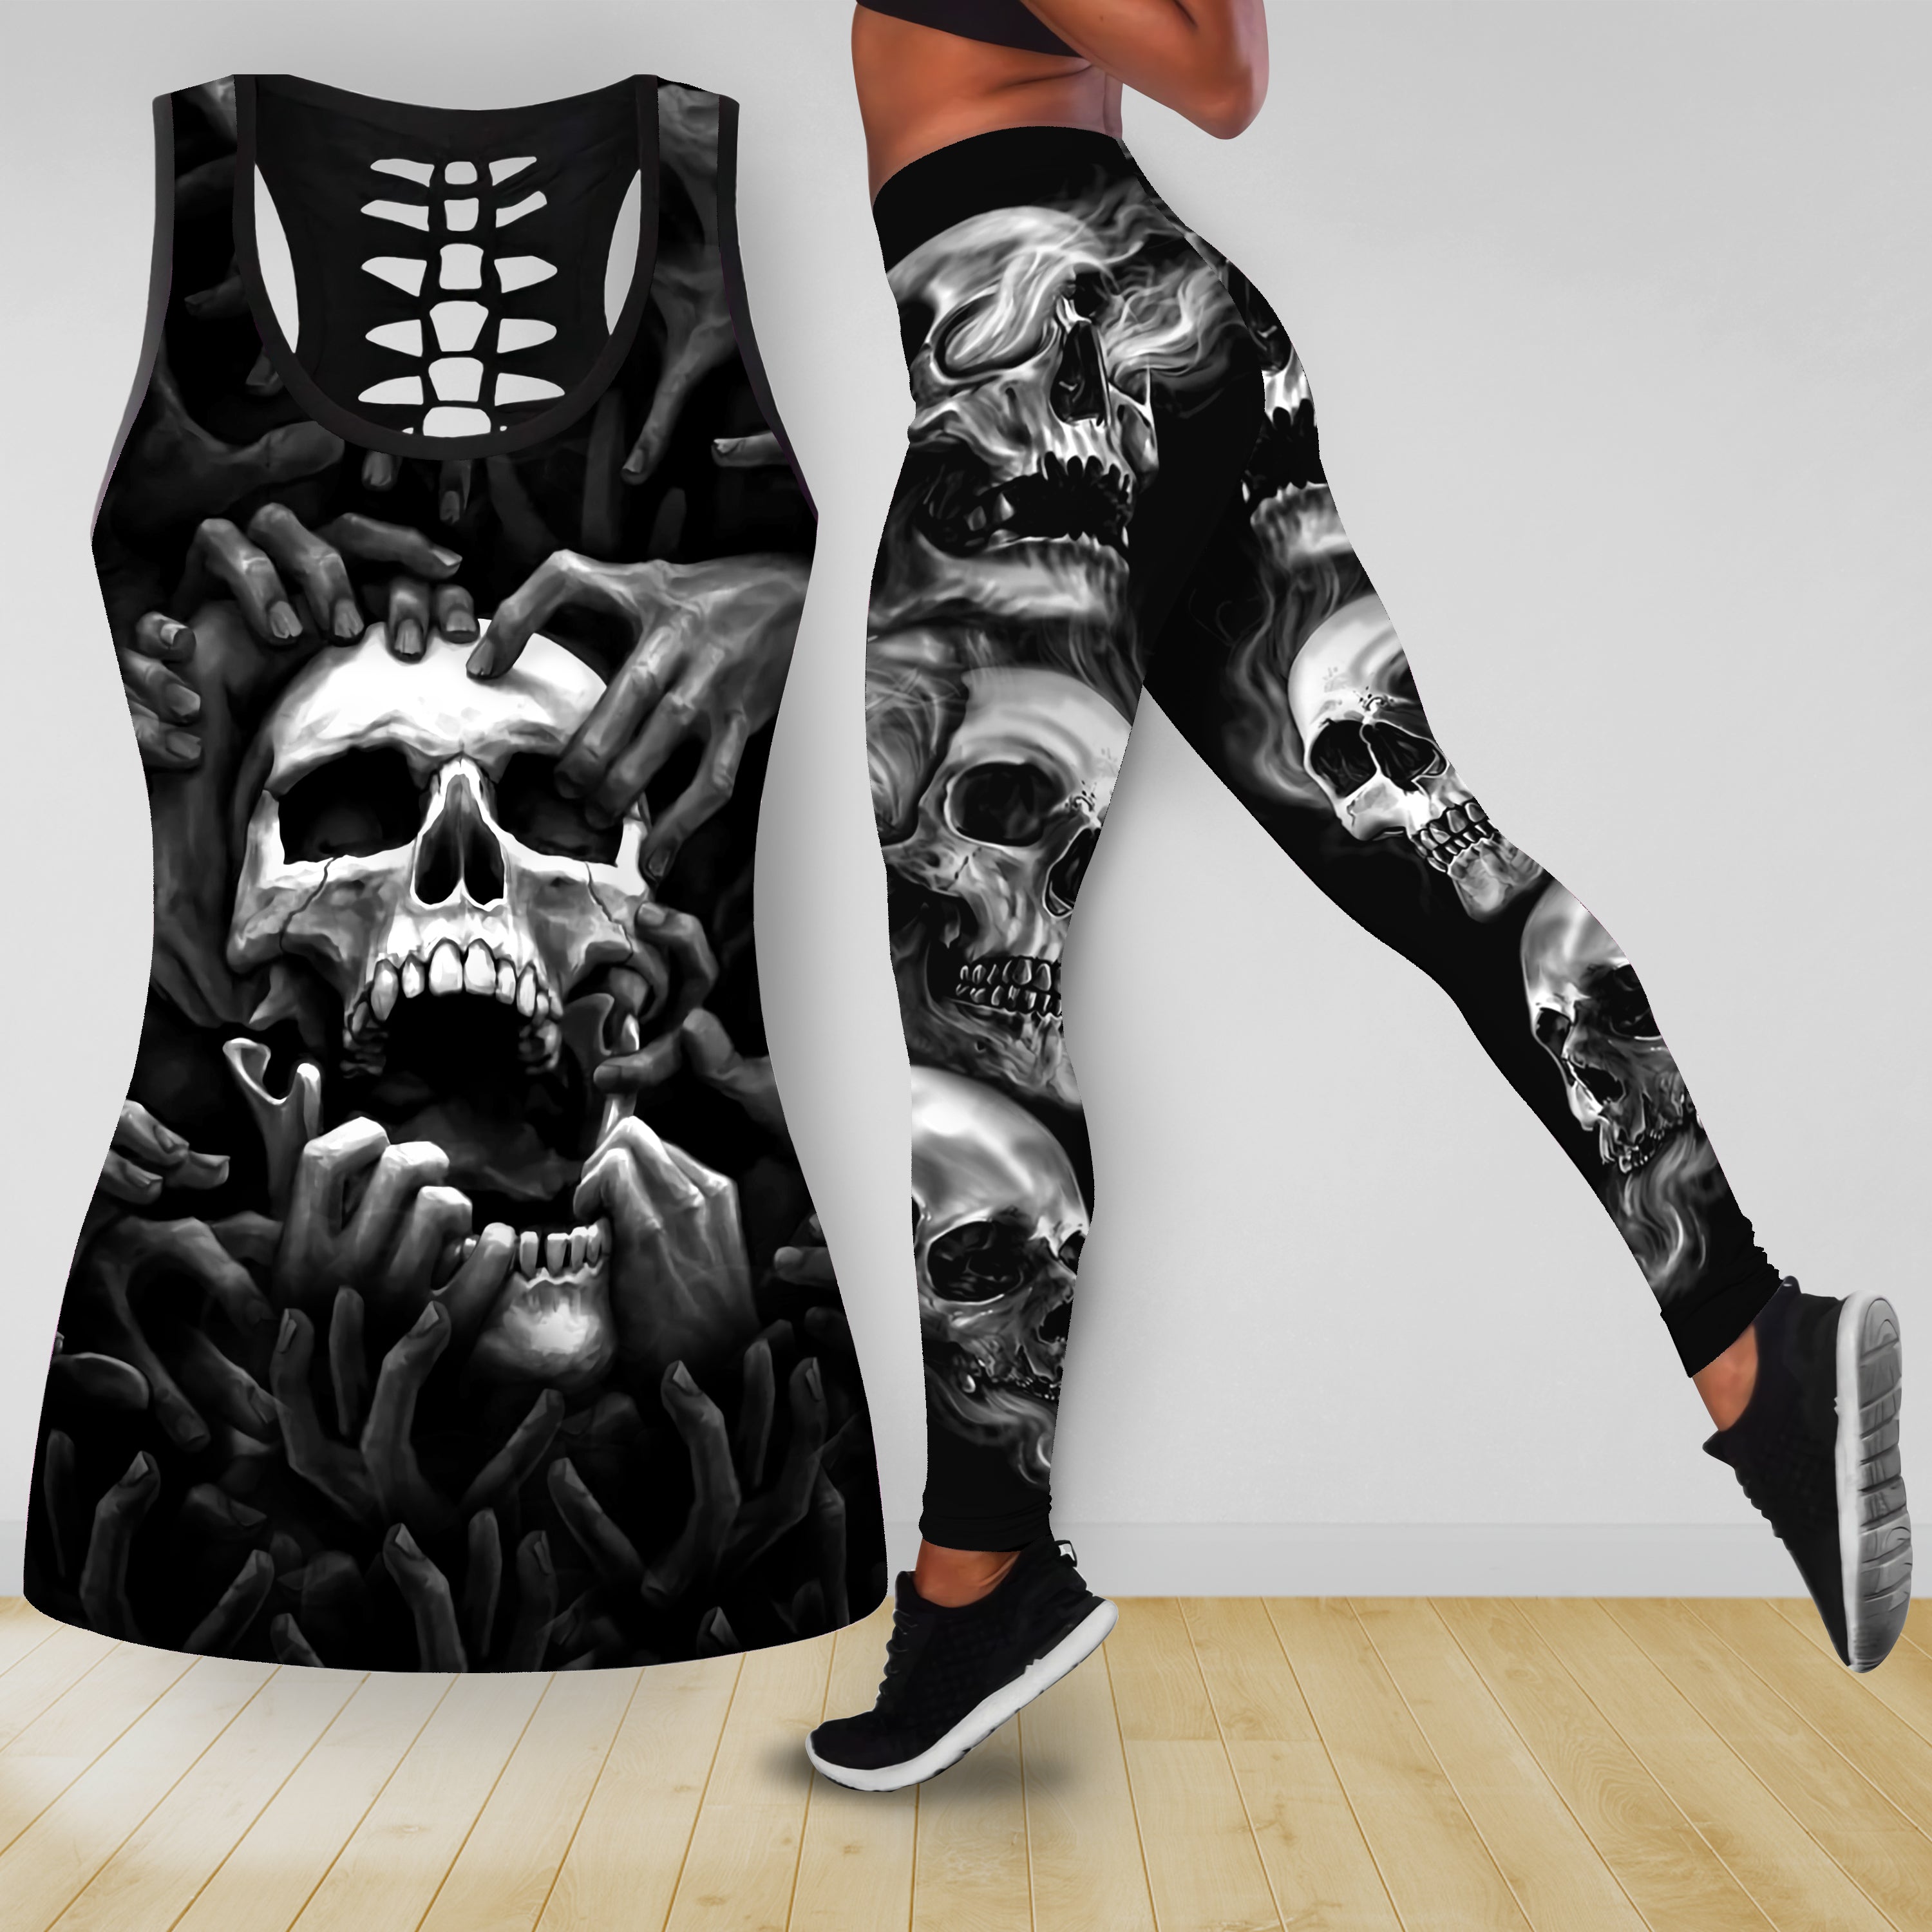 The Grim Reaper Skull Tattoo Combo Legging Tank Top	Combo Legging Tank Top 09855